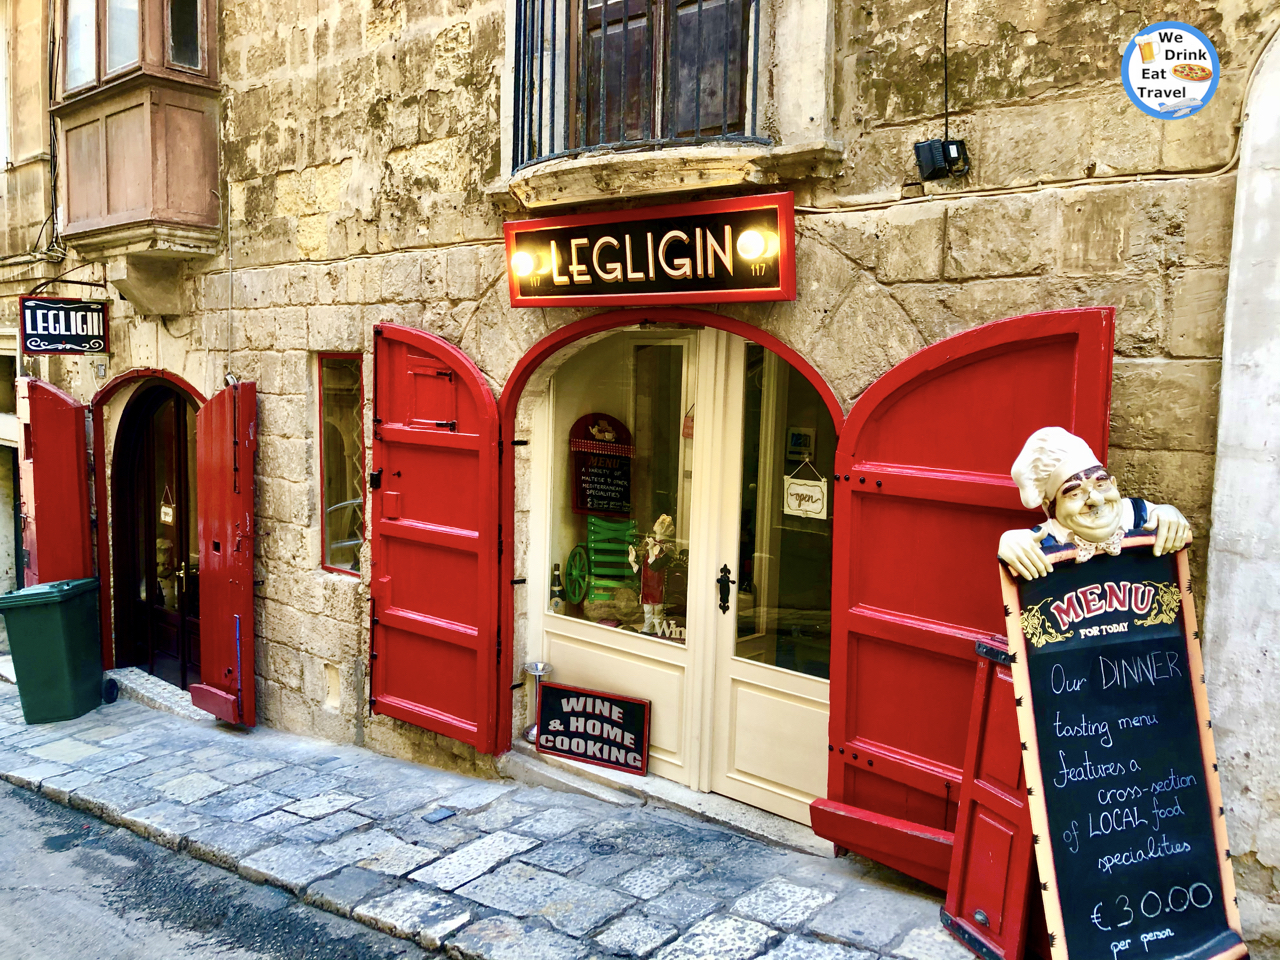 malta valletta restaurants